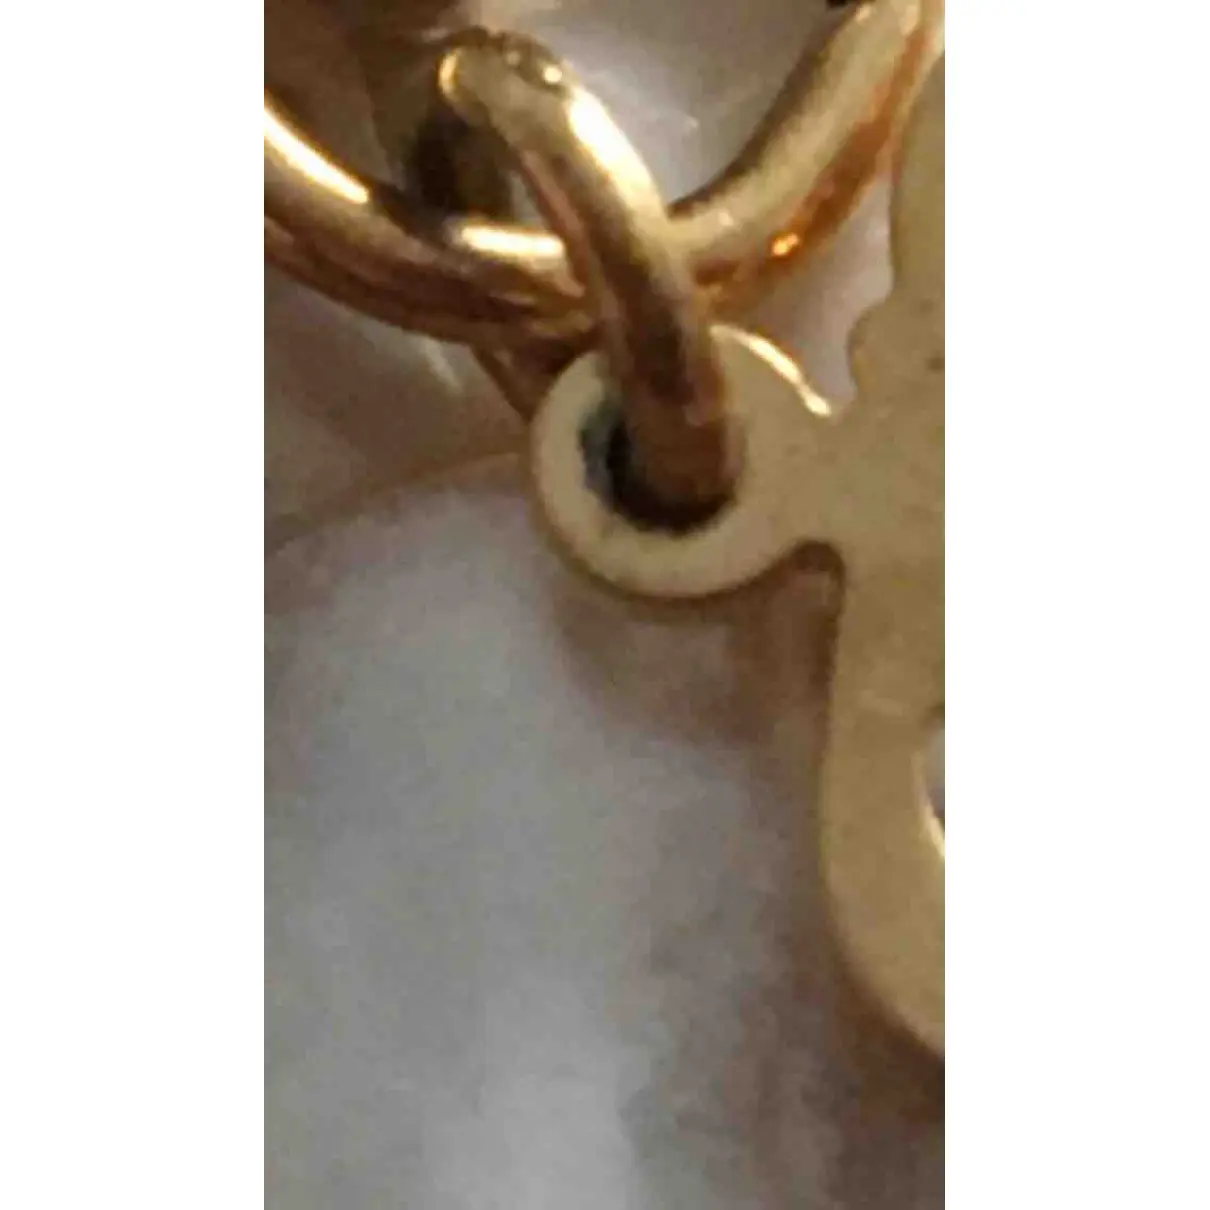 Buy Dior Gold Metal Bracelet online